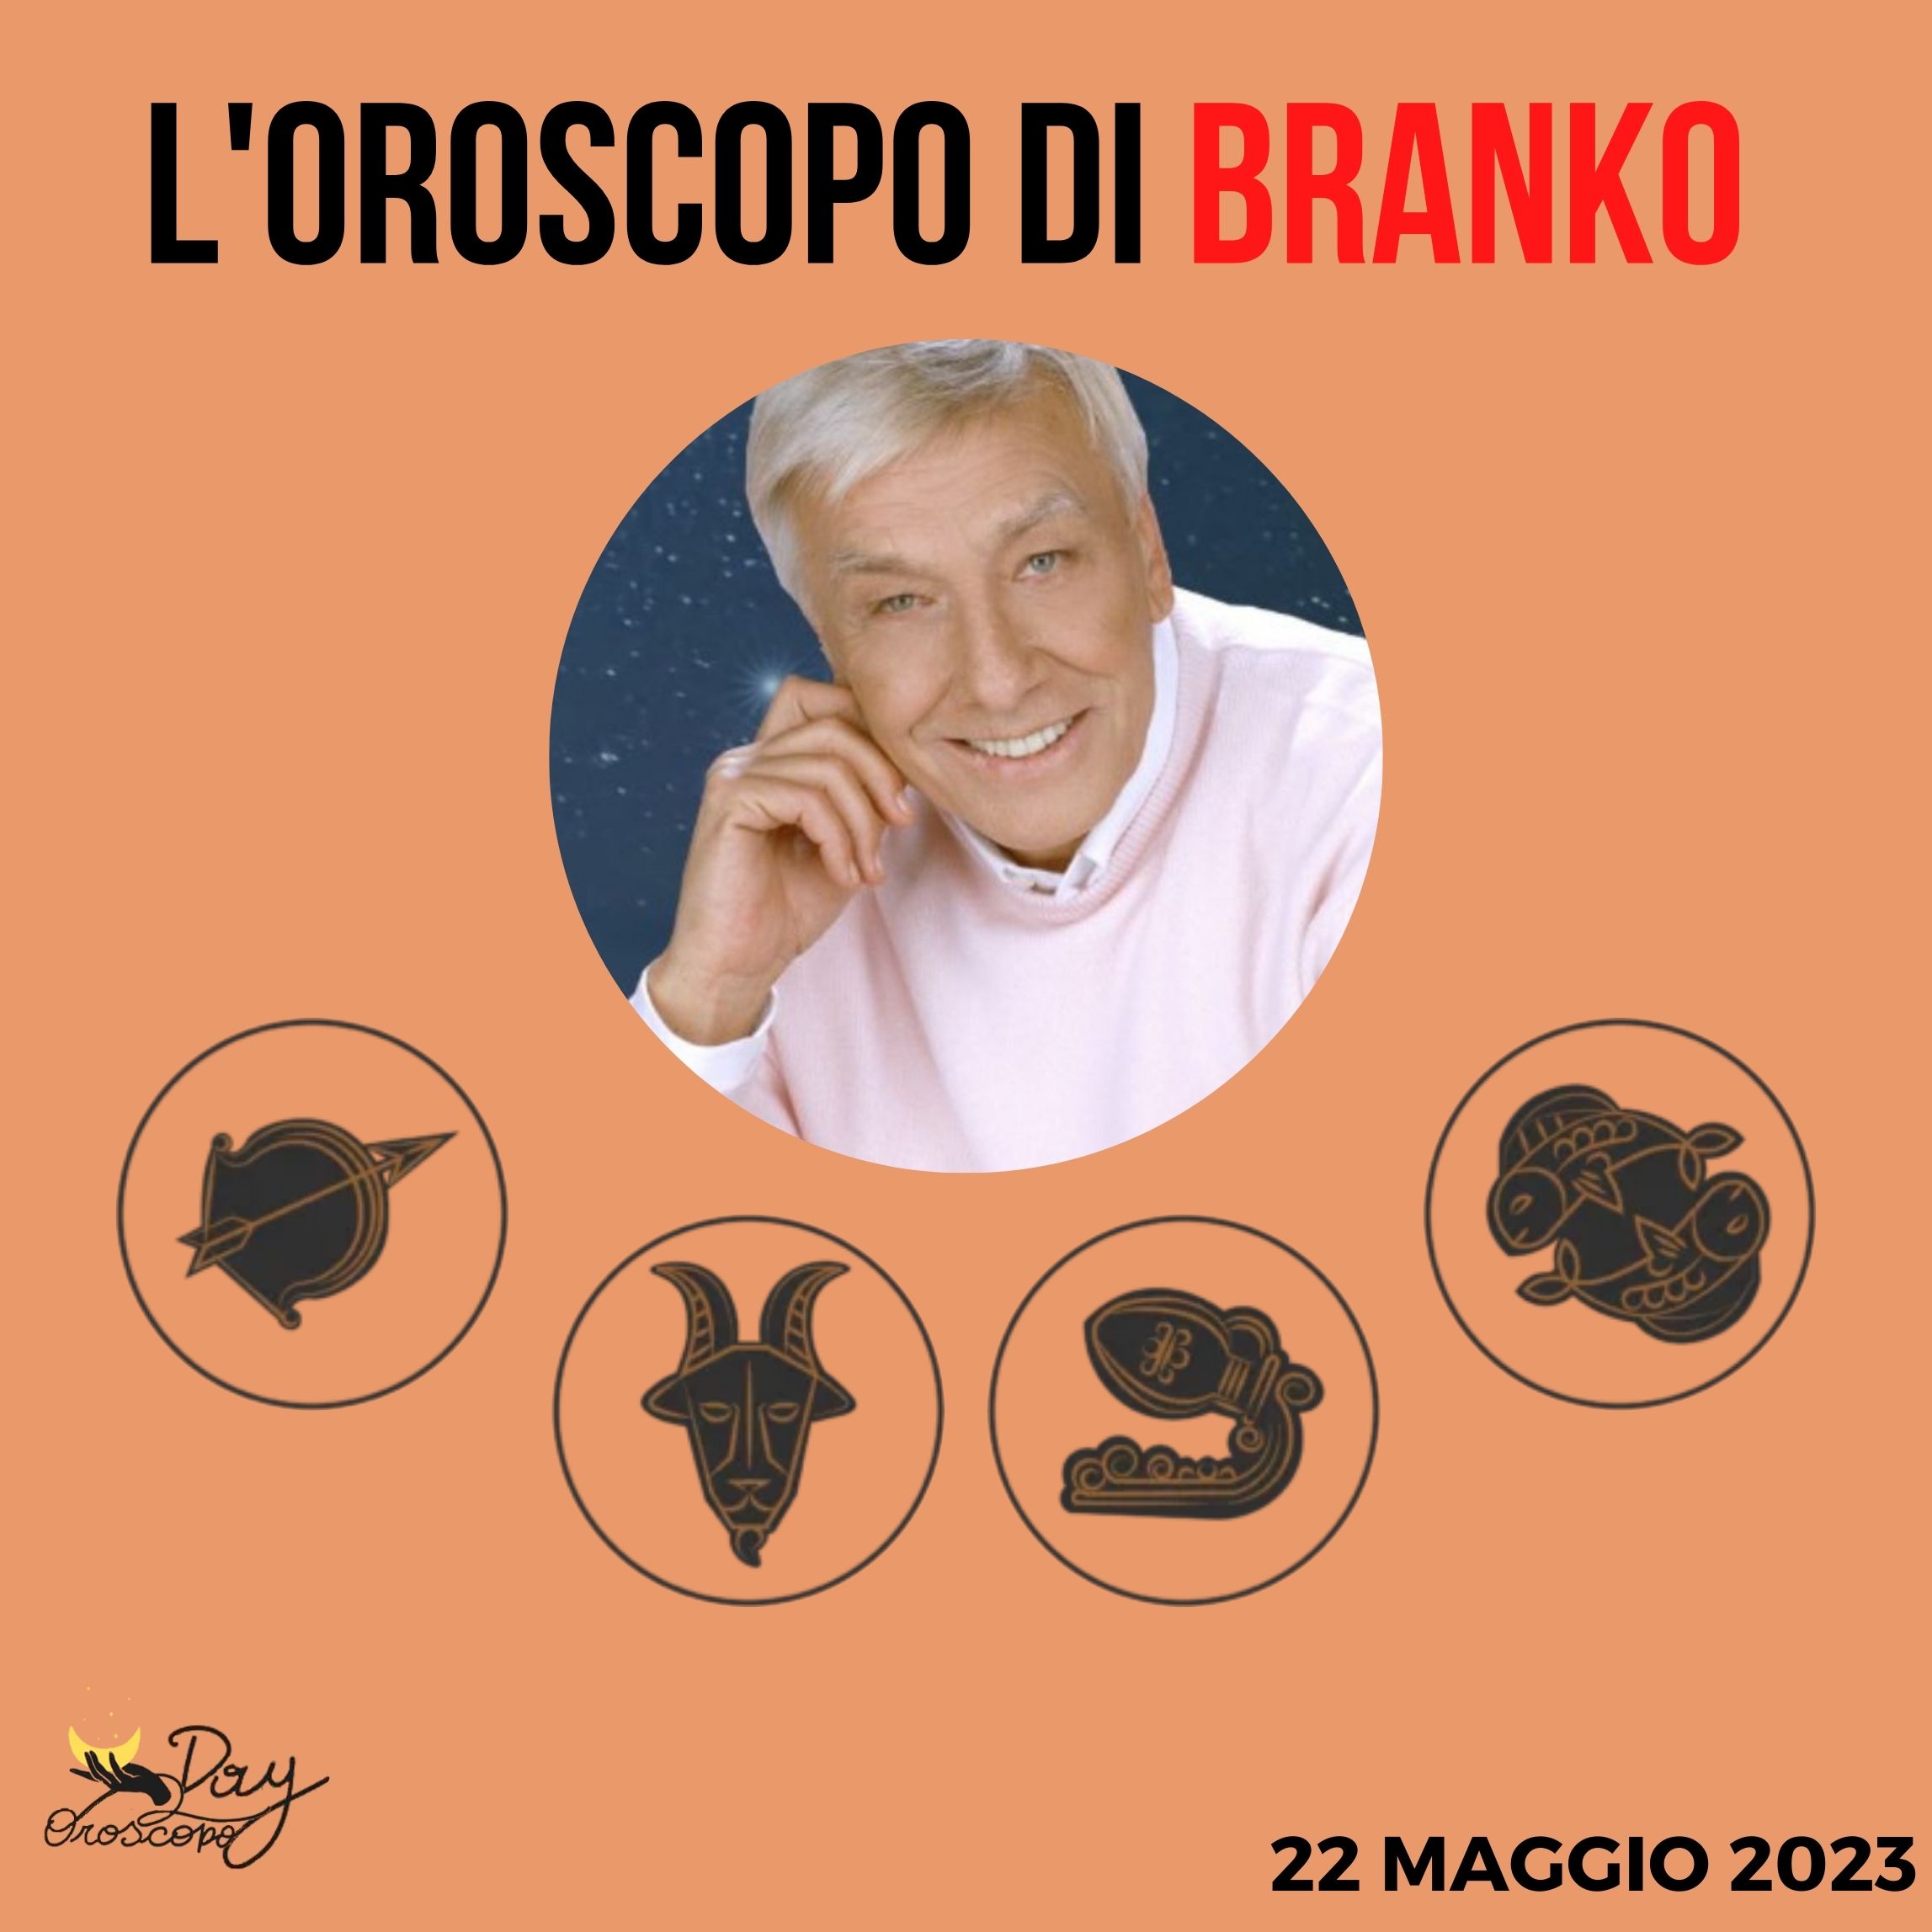 Oroscopo oggi domani Branko 22 maggio Sagittario Capricorno Acquario Pesci